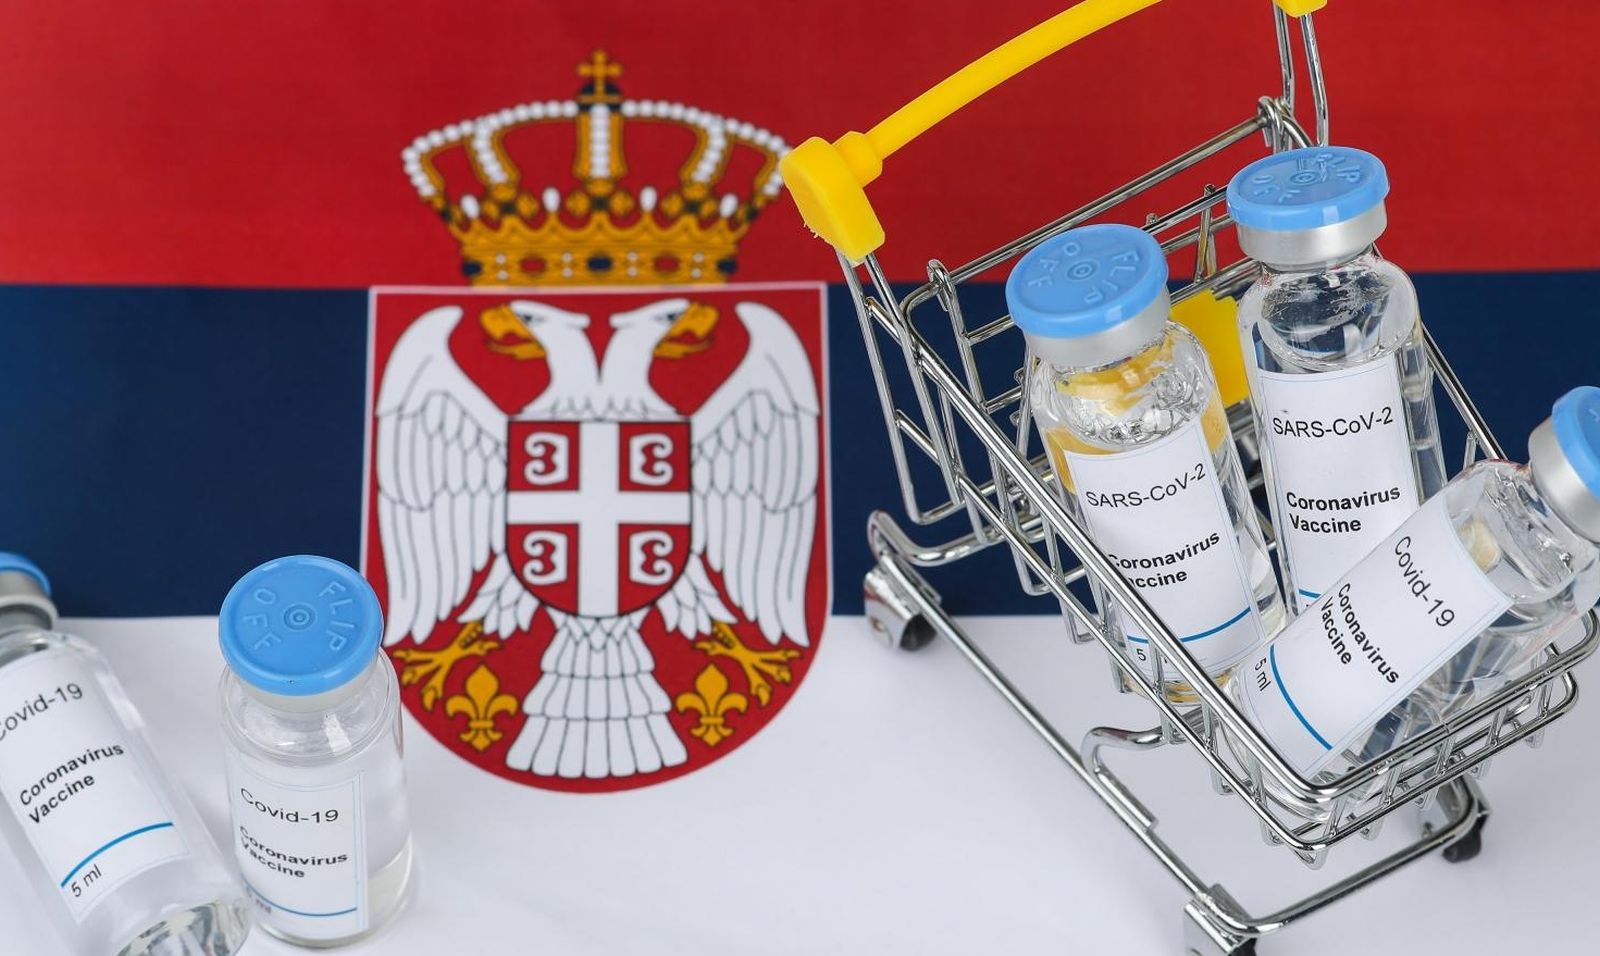 18.02.2021., Zagreb - Velika globalna potraznja za cjepivom protiv covida-19. Europska unija osigurala je najveci i najsiri portfolio narudzbi na svijetu - ukupno 1,485 milijardi doza od sest razlicitih proizvodjaca, s dodatnim opcijama za kupnju jos 780 milijuna doza. Photo: Zeljko Lukunic/PIXSELL